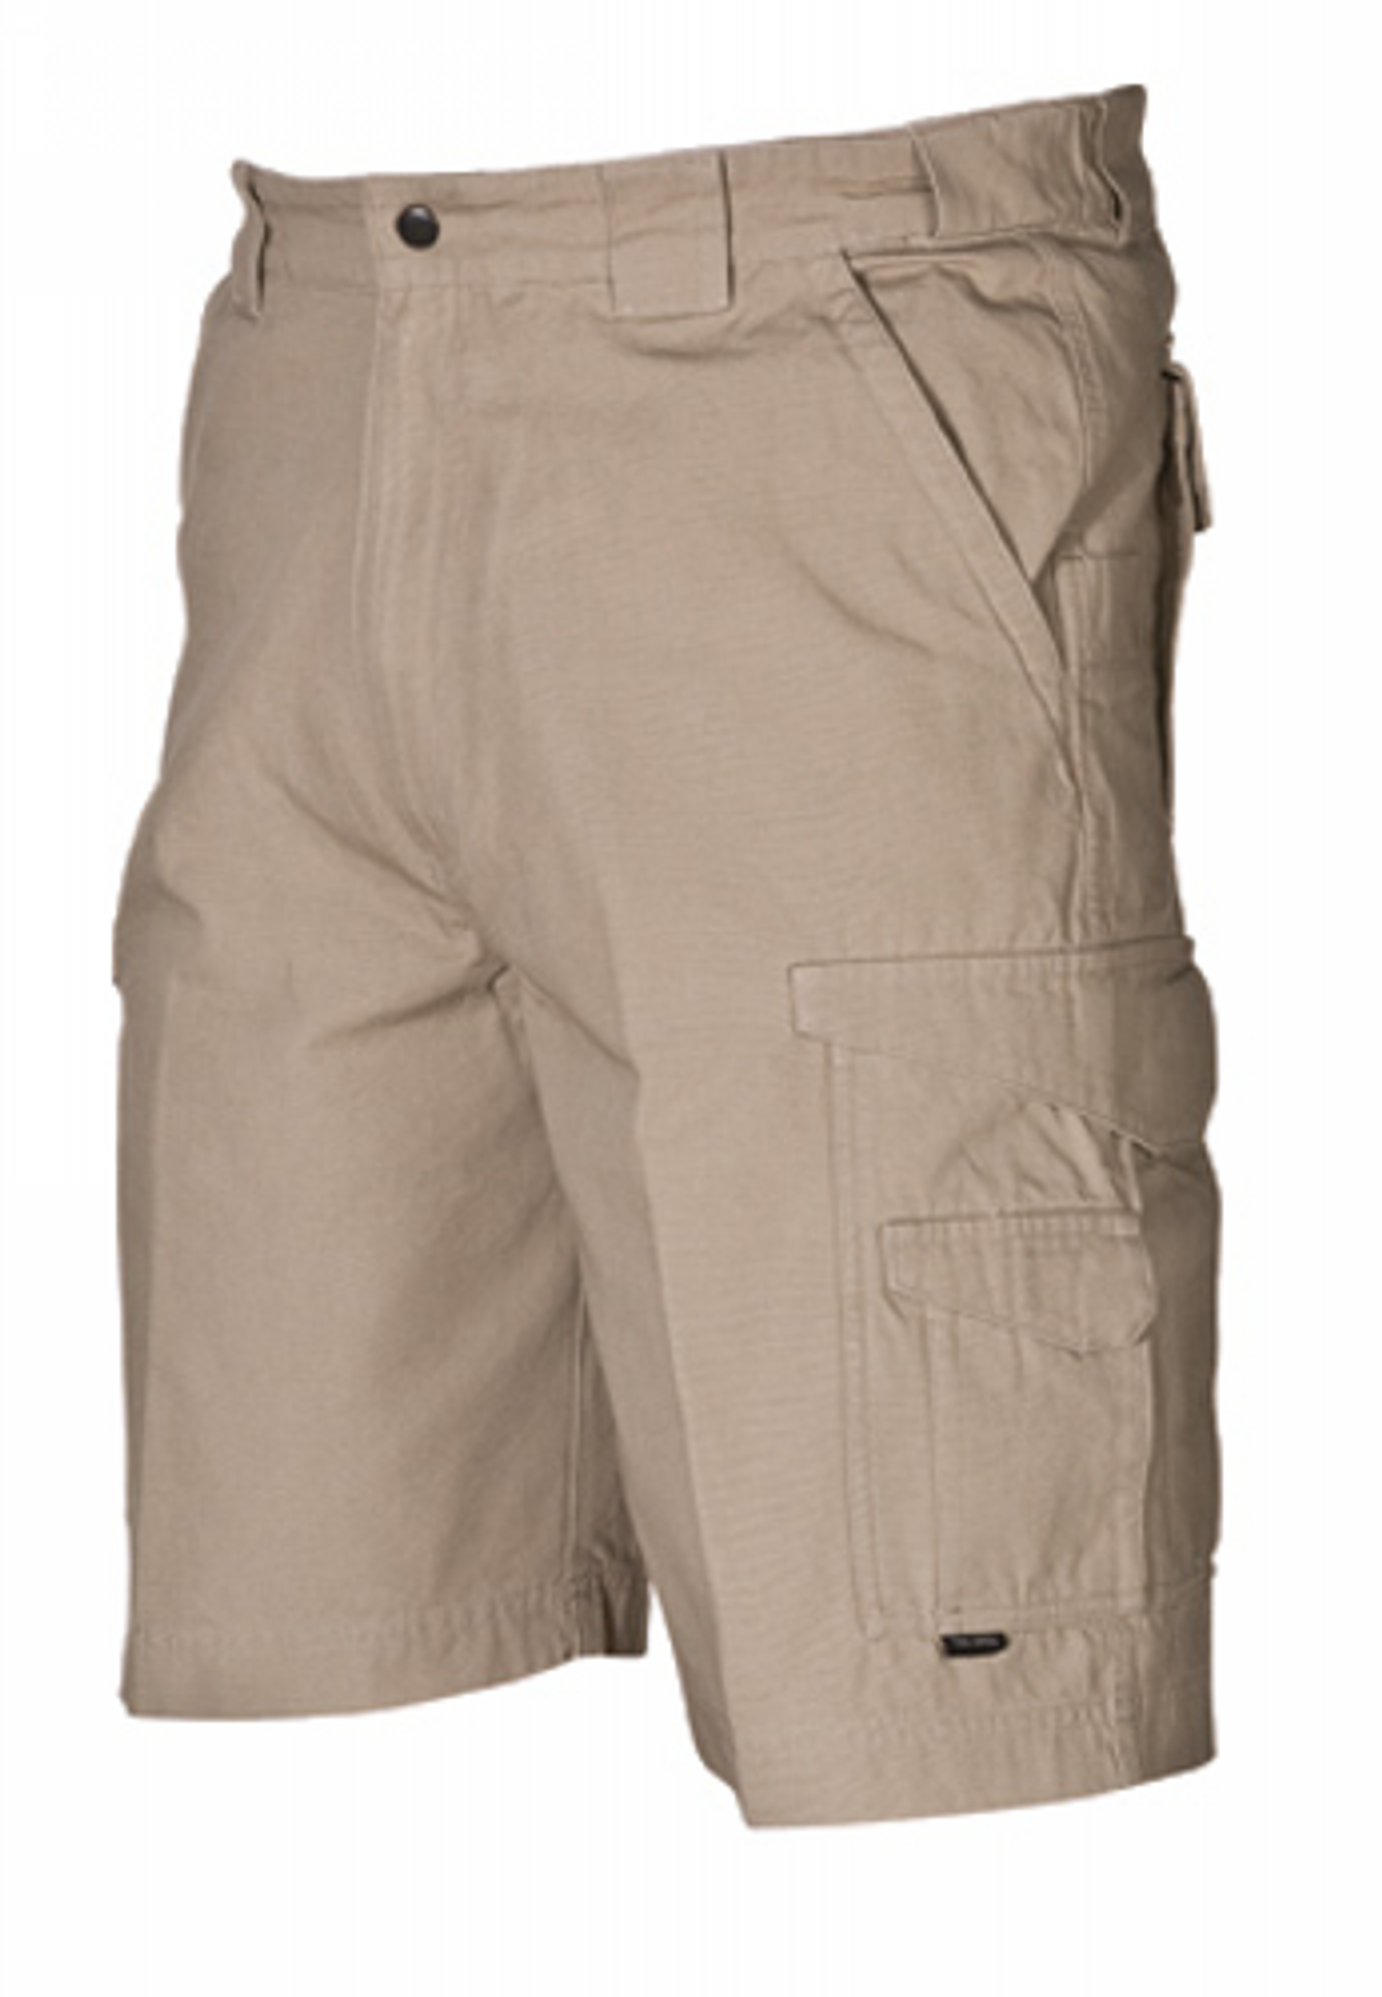 Original Tactical Shorts - KRTSP-4268005